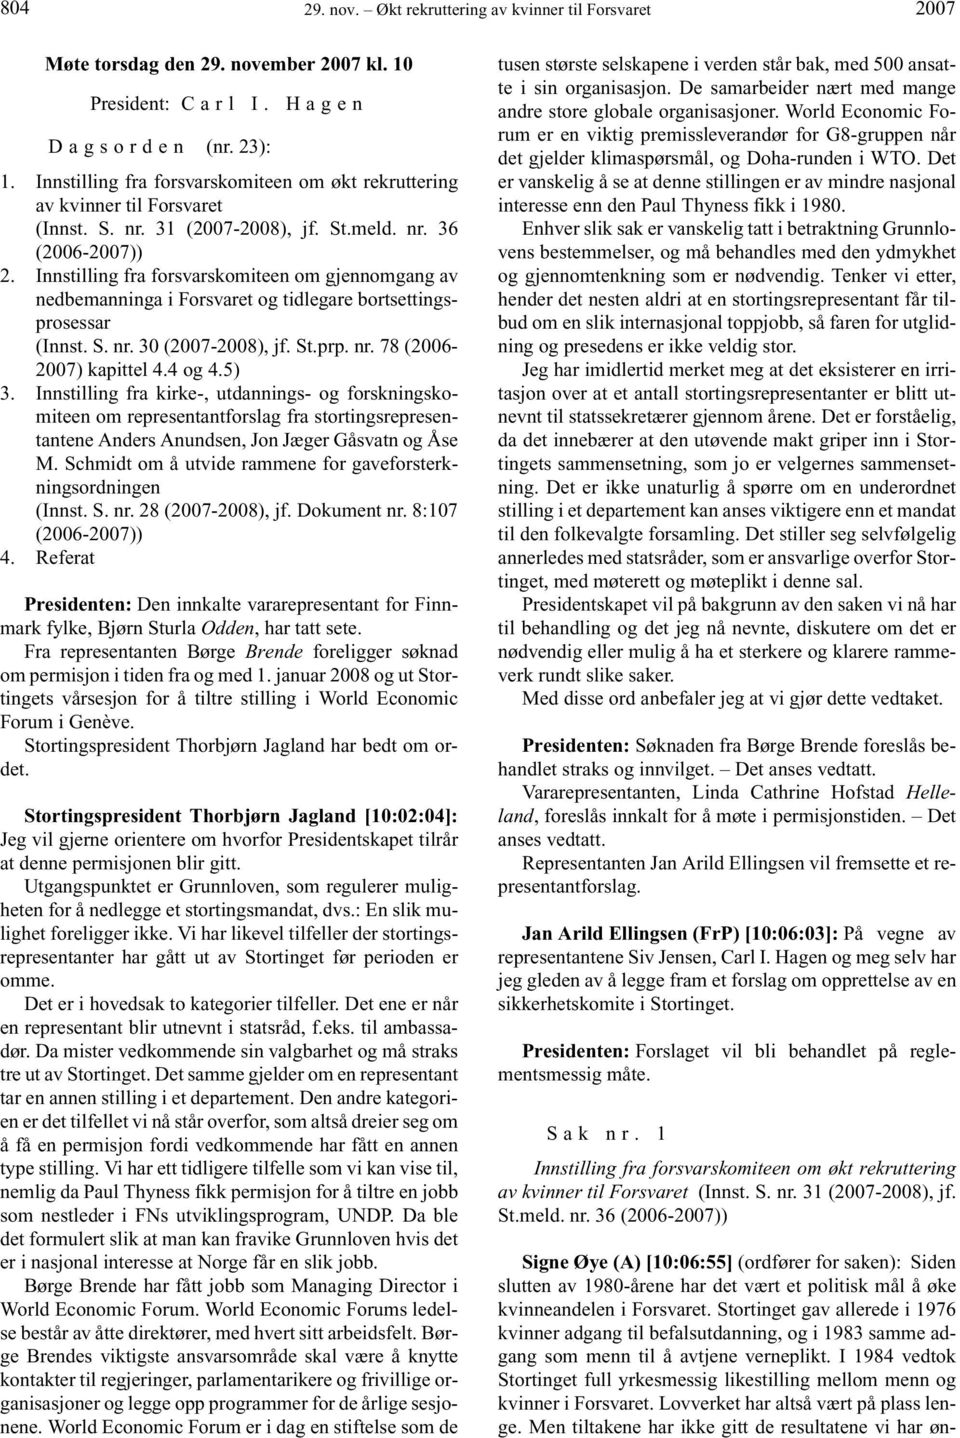 Innstilling fra forsvarskomiteen om gjennomgang av nedbemanninga i Forsvaret og tidlegare bortsettingsprosessar (Innst. S. nr. 30 (-2008), jf. St.prp. nr. 78 (2006- ) kapittel 4.4 og 4.5) 3.